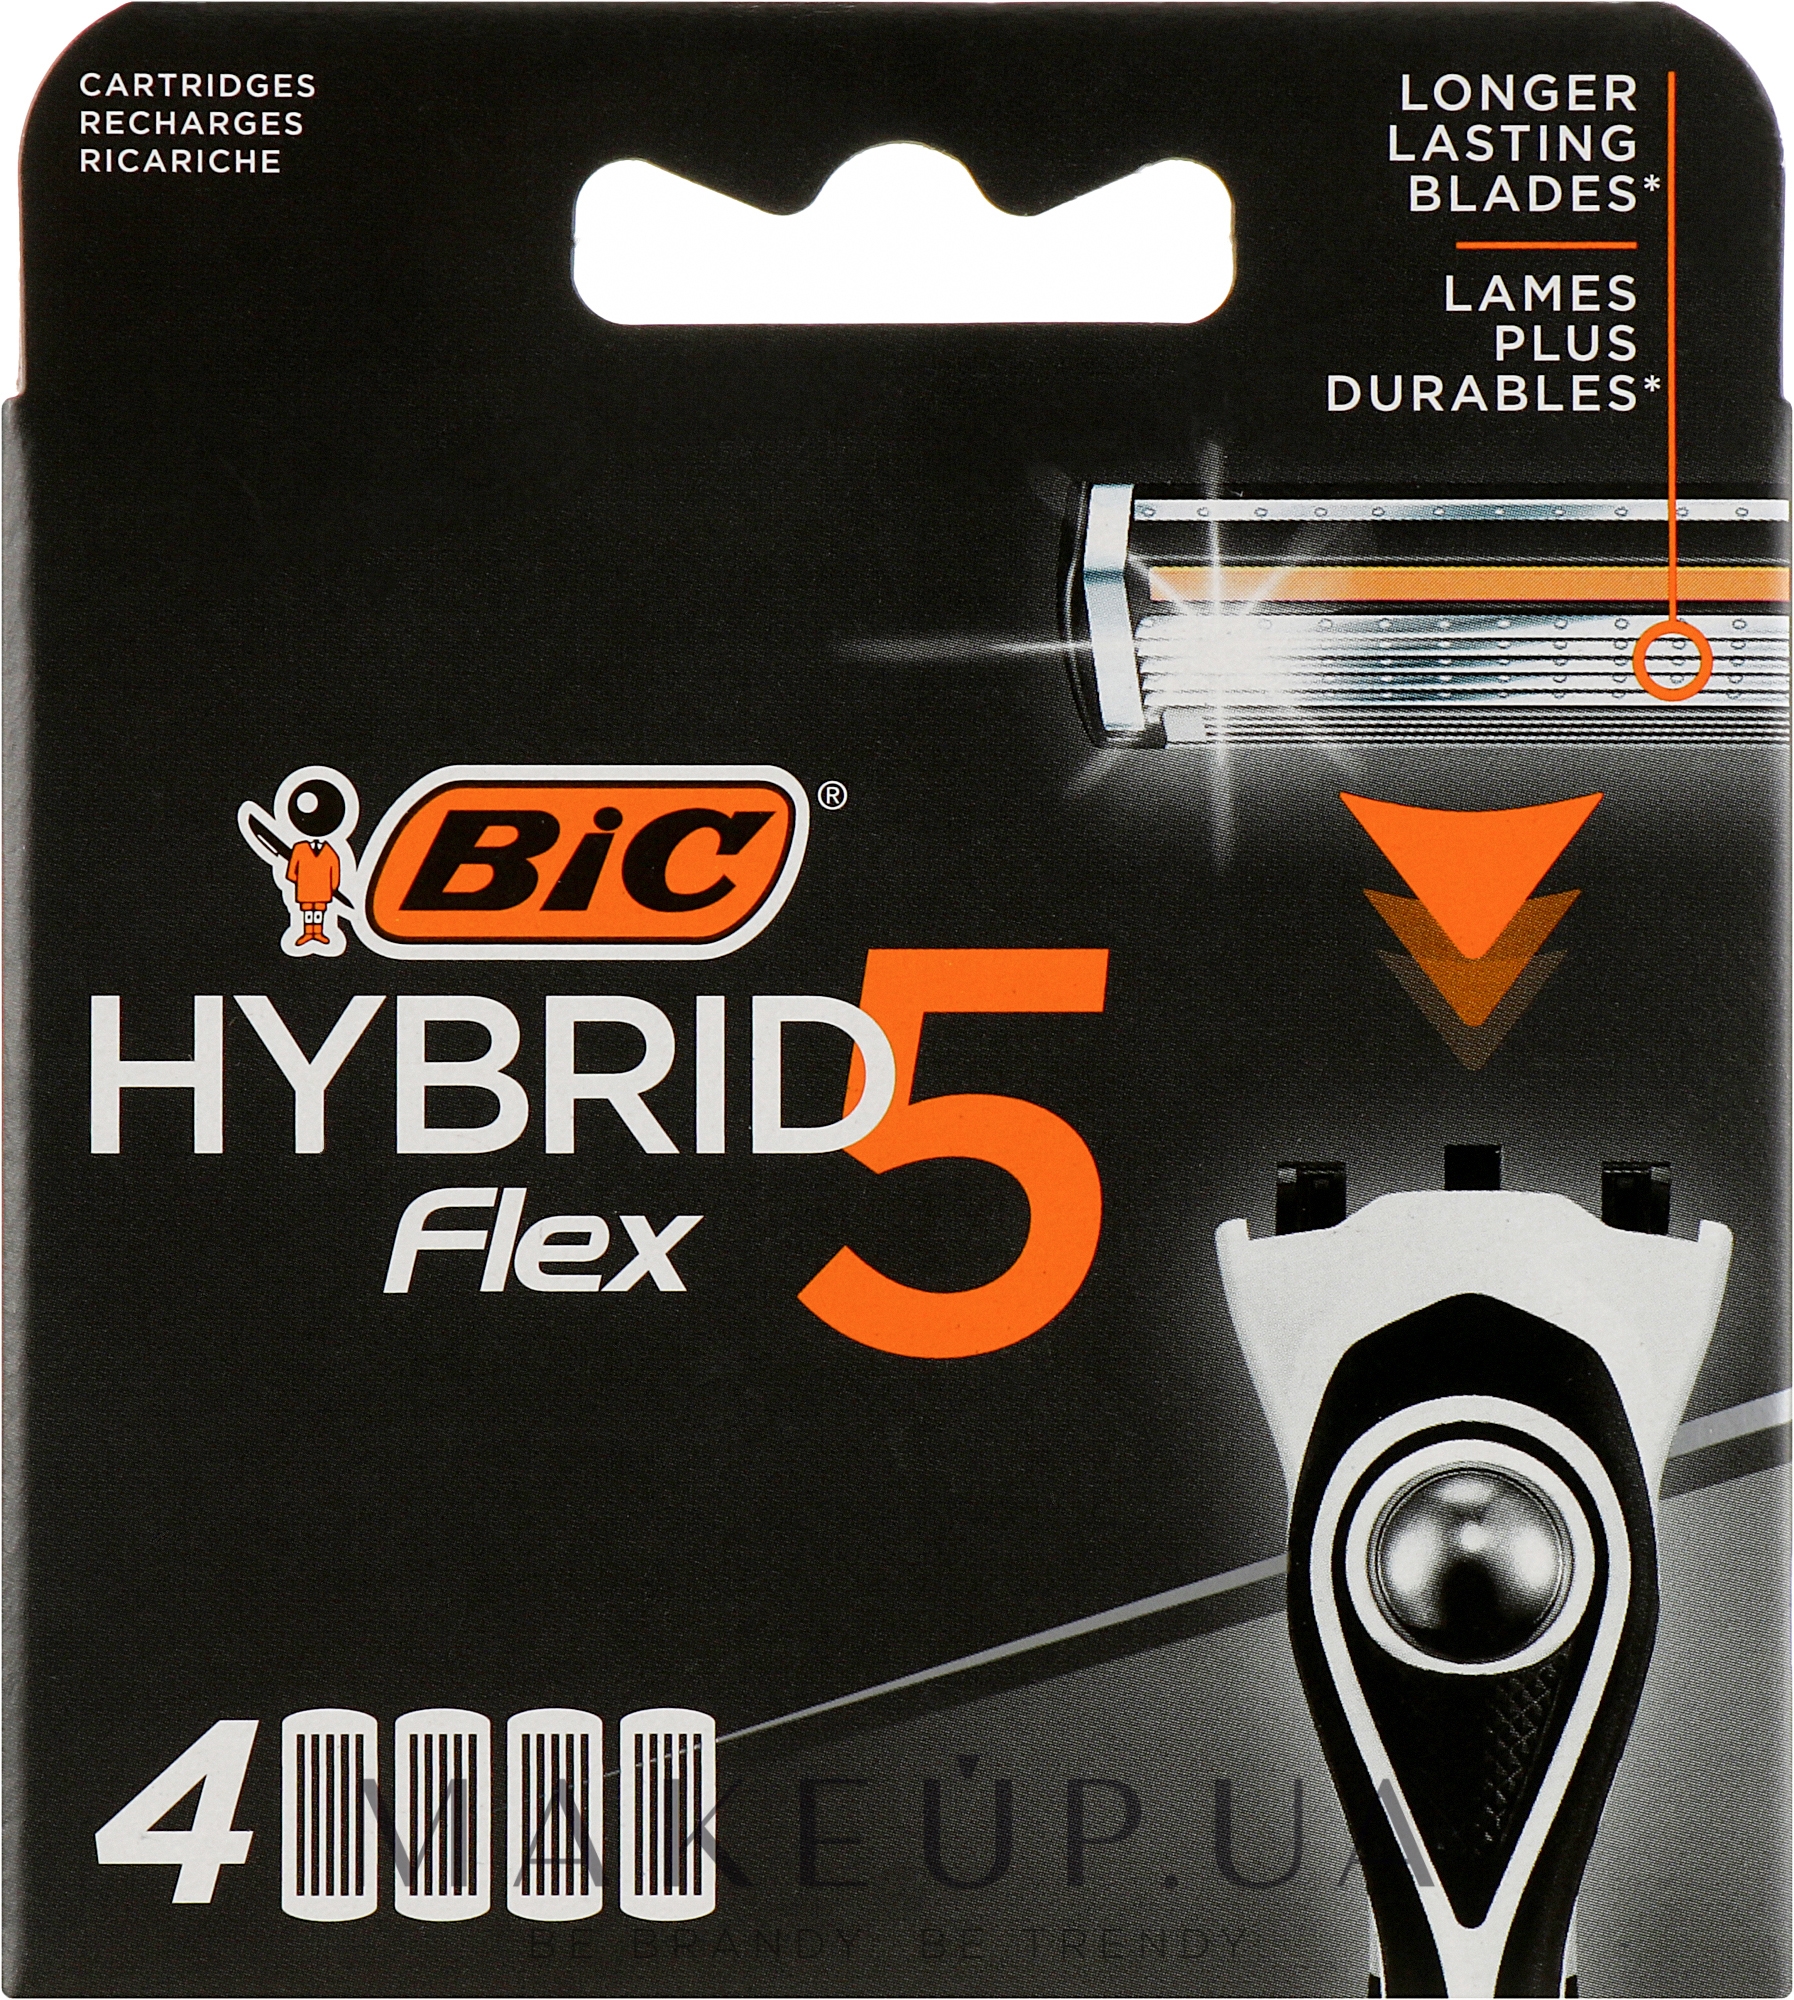 Змінні касети для гоління Flex 5 Hybrid, 4 шт. - Bic — фото 4шт